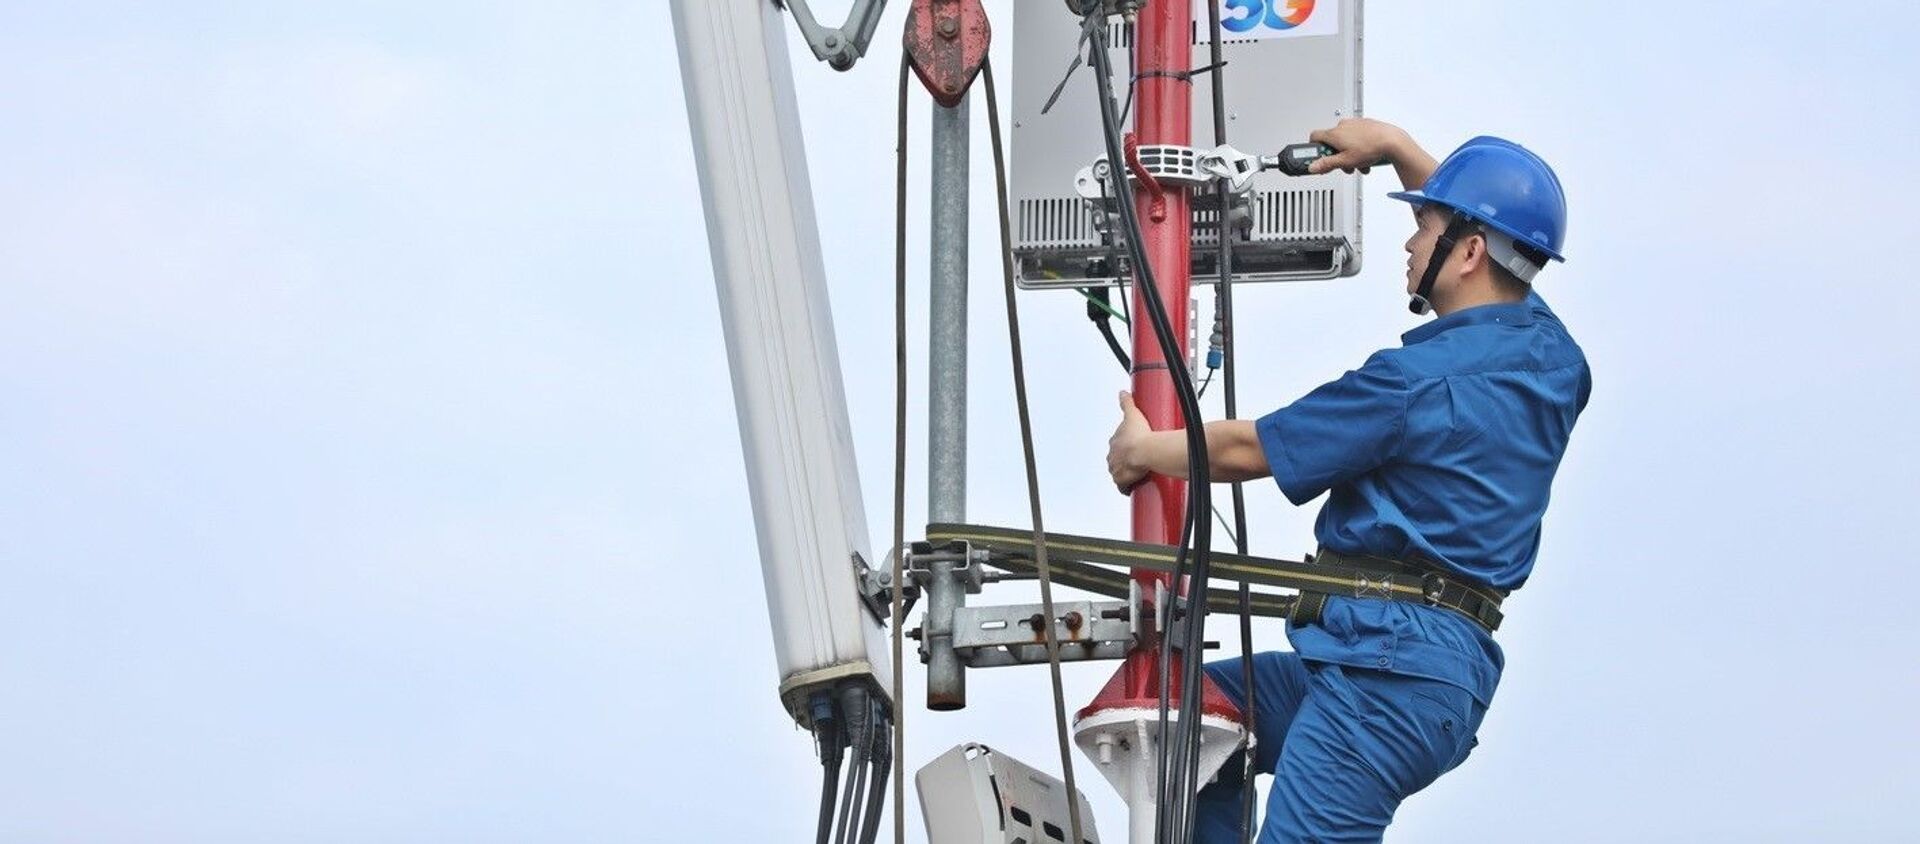 Nhân viên VNPT khẩn trương hoàn thành lắp đặt các trạm phát sóng 5G tại khu vực Hà Nội - Sputnik Việt Nam, 1920, 01.12.2020